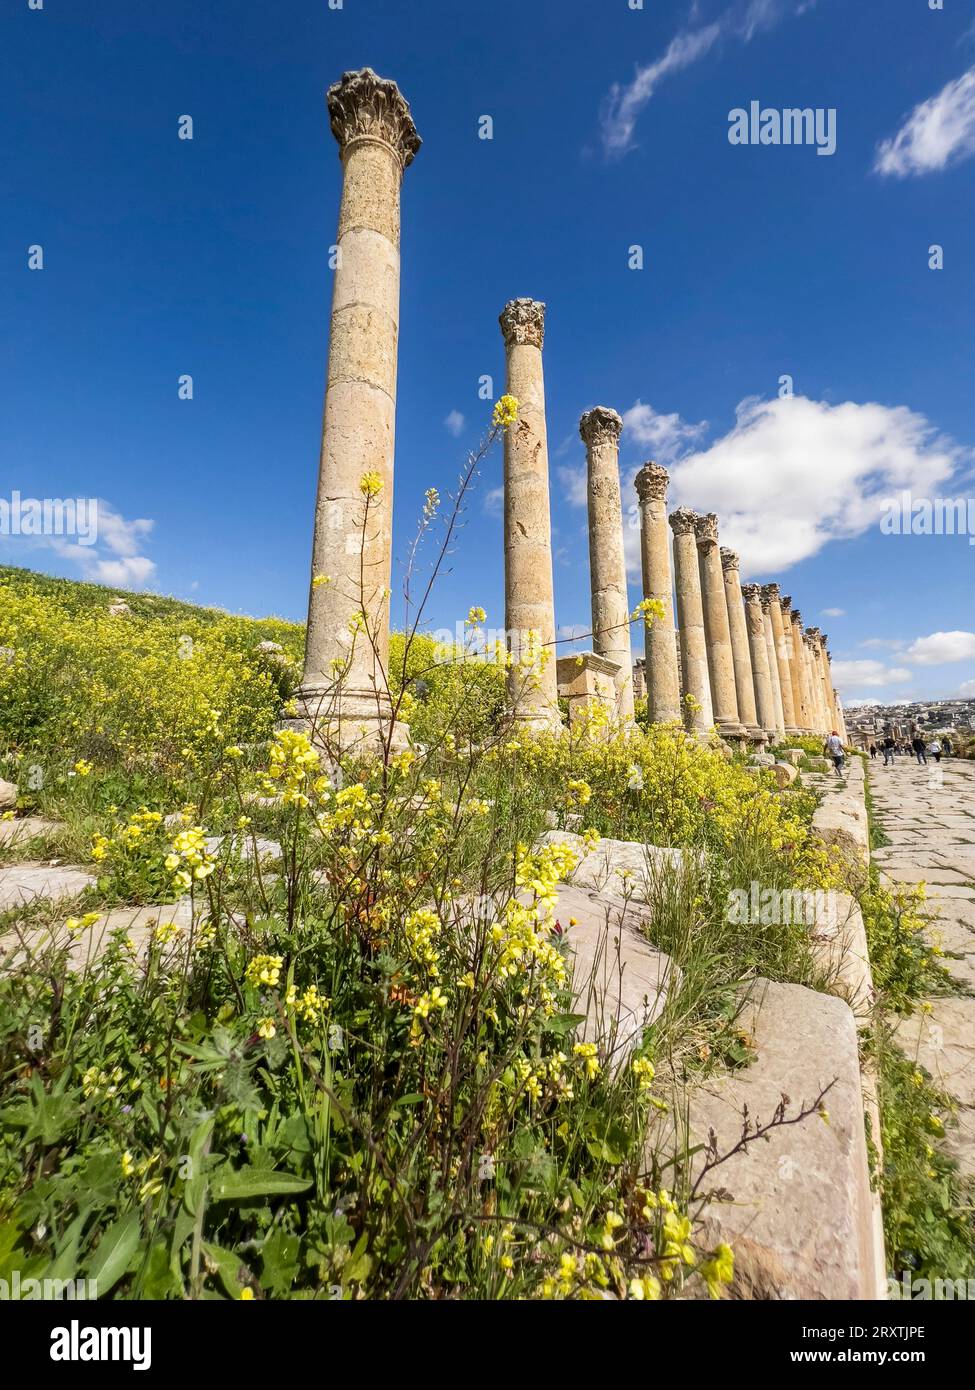 Blumen vor Säulen in der antiken Stadt Jerash, die vermutlich 331 v. Chr. von Alexander dem Großen gegründet wurde, Jerash, Jordanien, Naher Osten Stockfoto